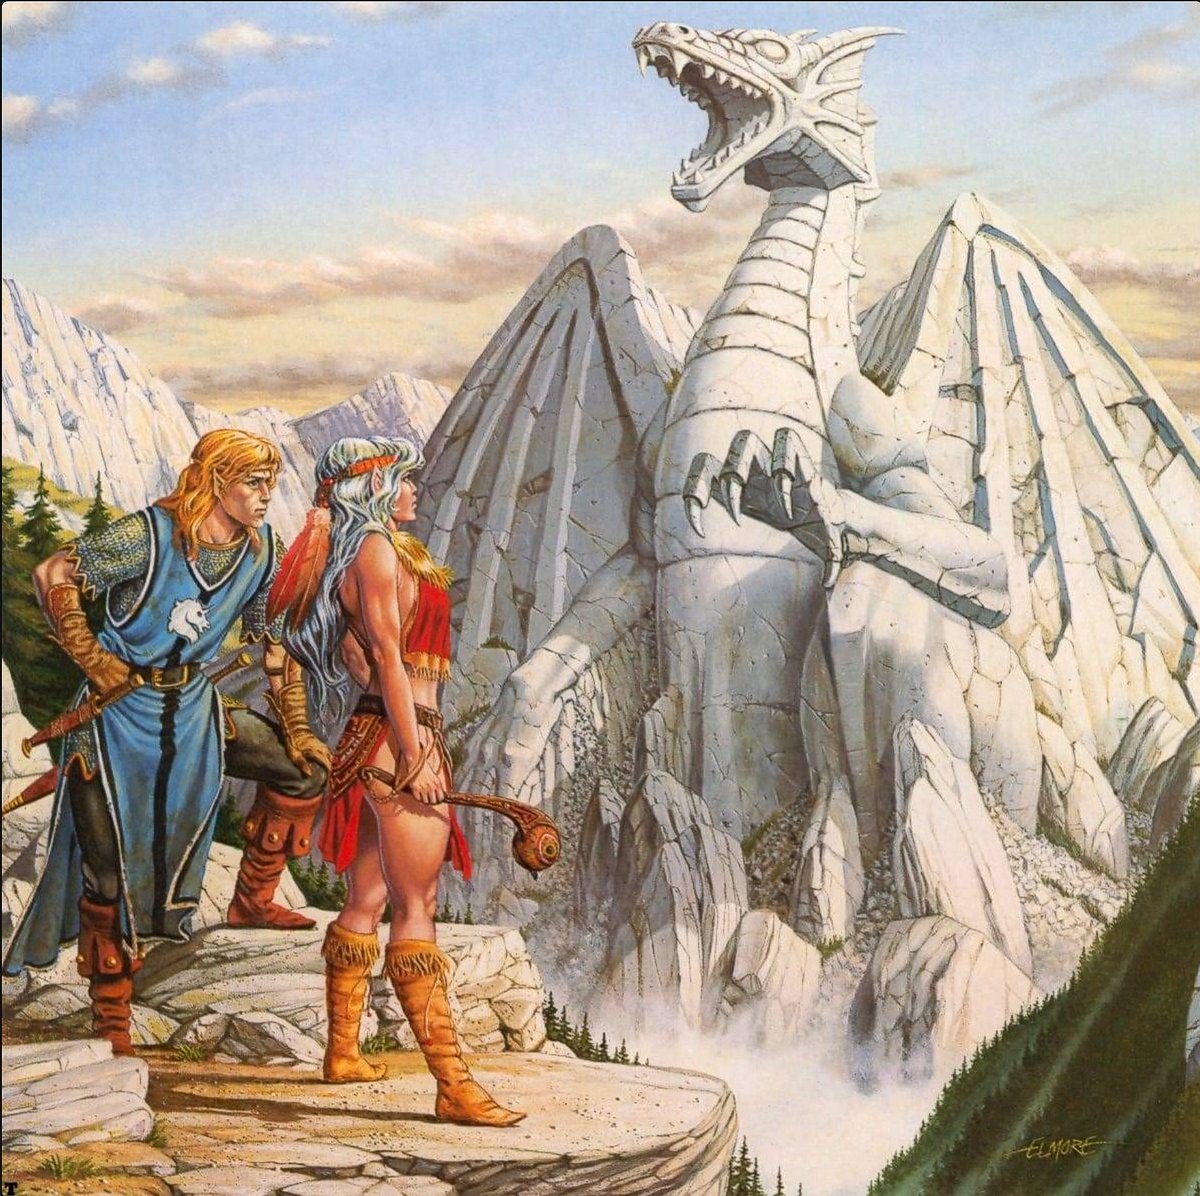 Dragons of Light - Larry Elmore
#dndartist